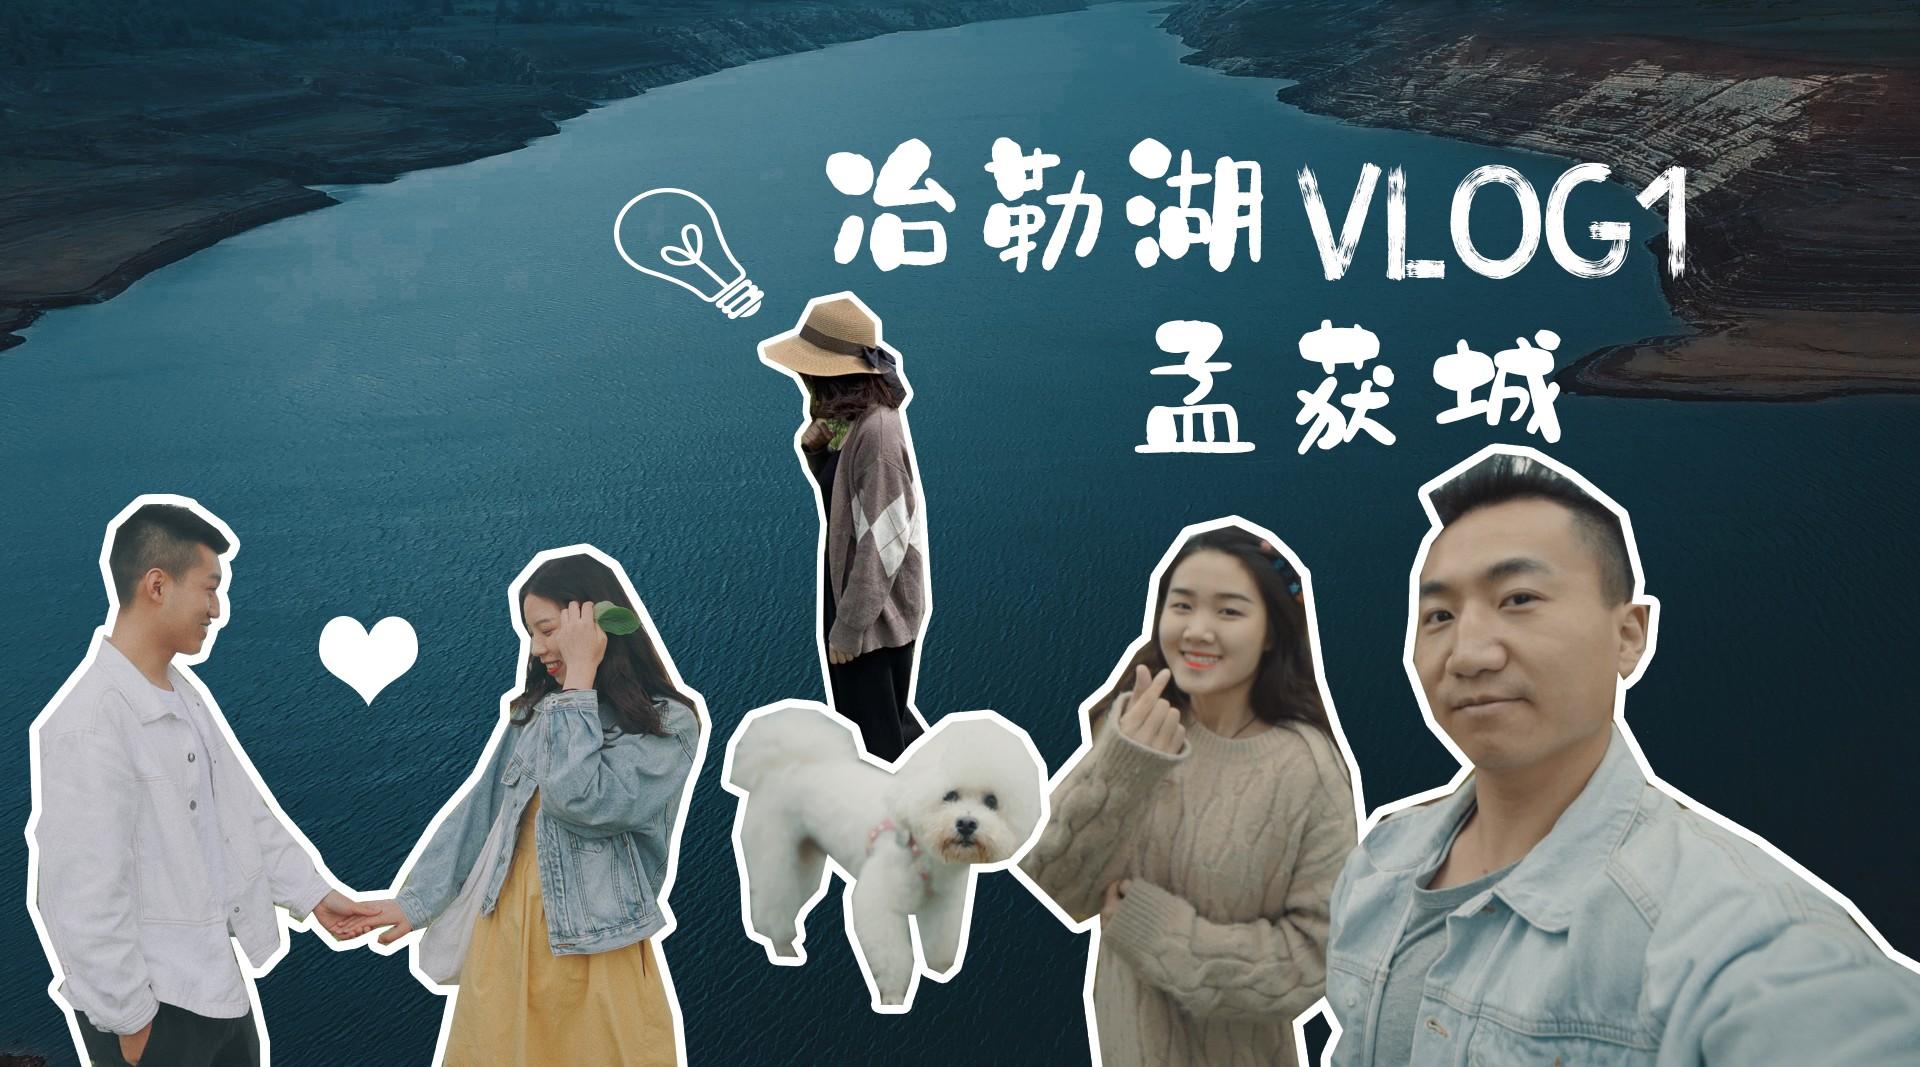 Vlog1 带着狗子从重庆自驾到栗子坪 冶勒湖 孟获城